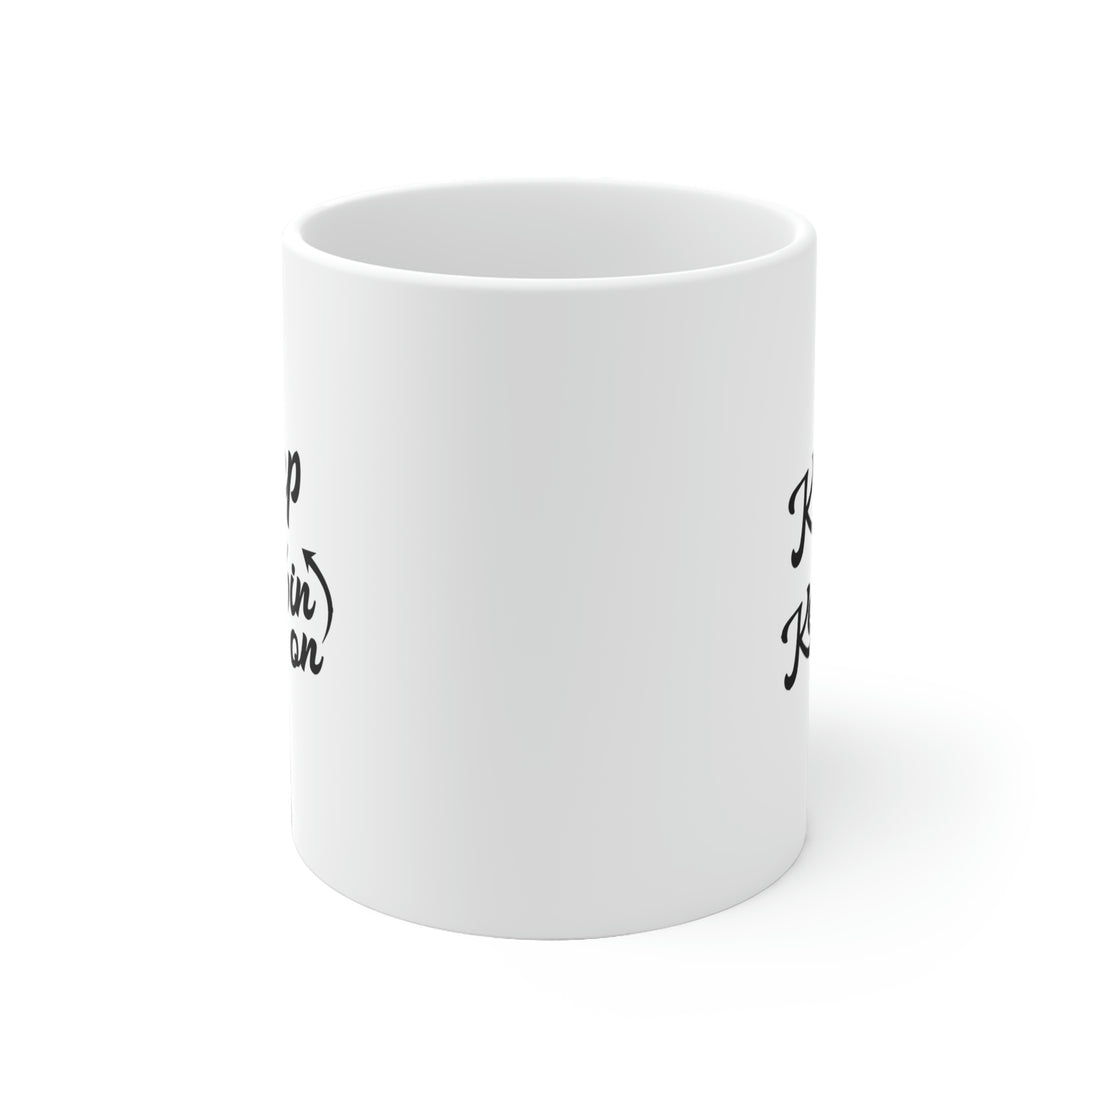 Keep On Keepin On - White Ceramic Mug 2 sizes Available